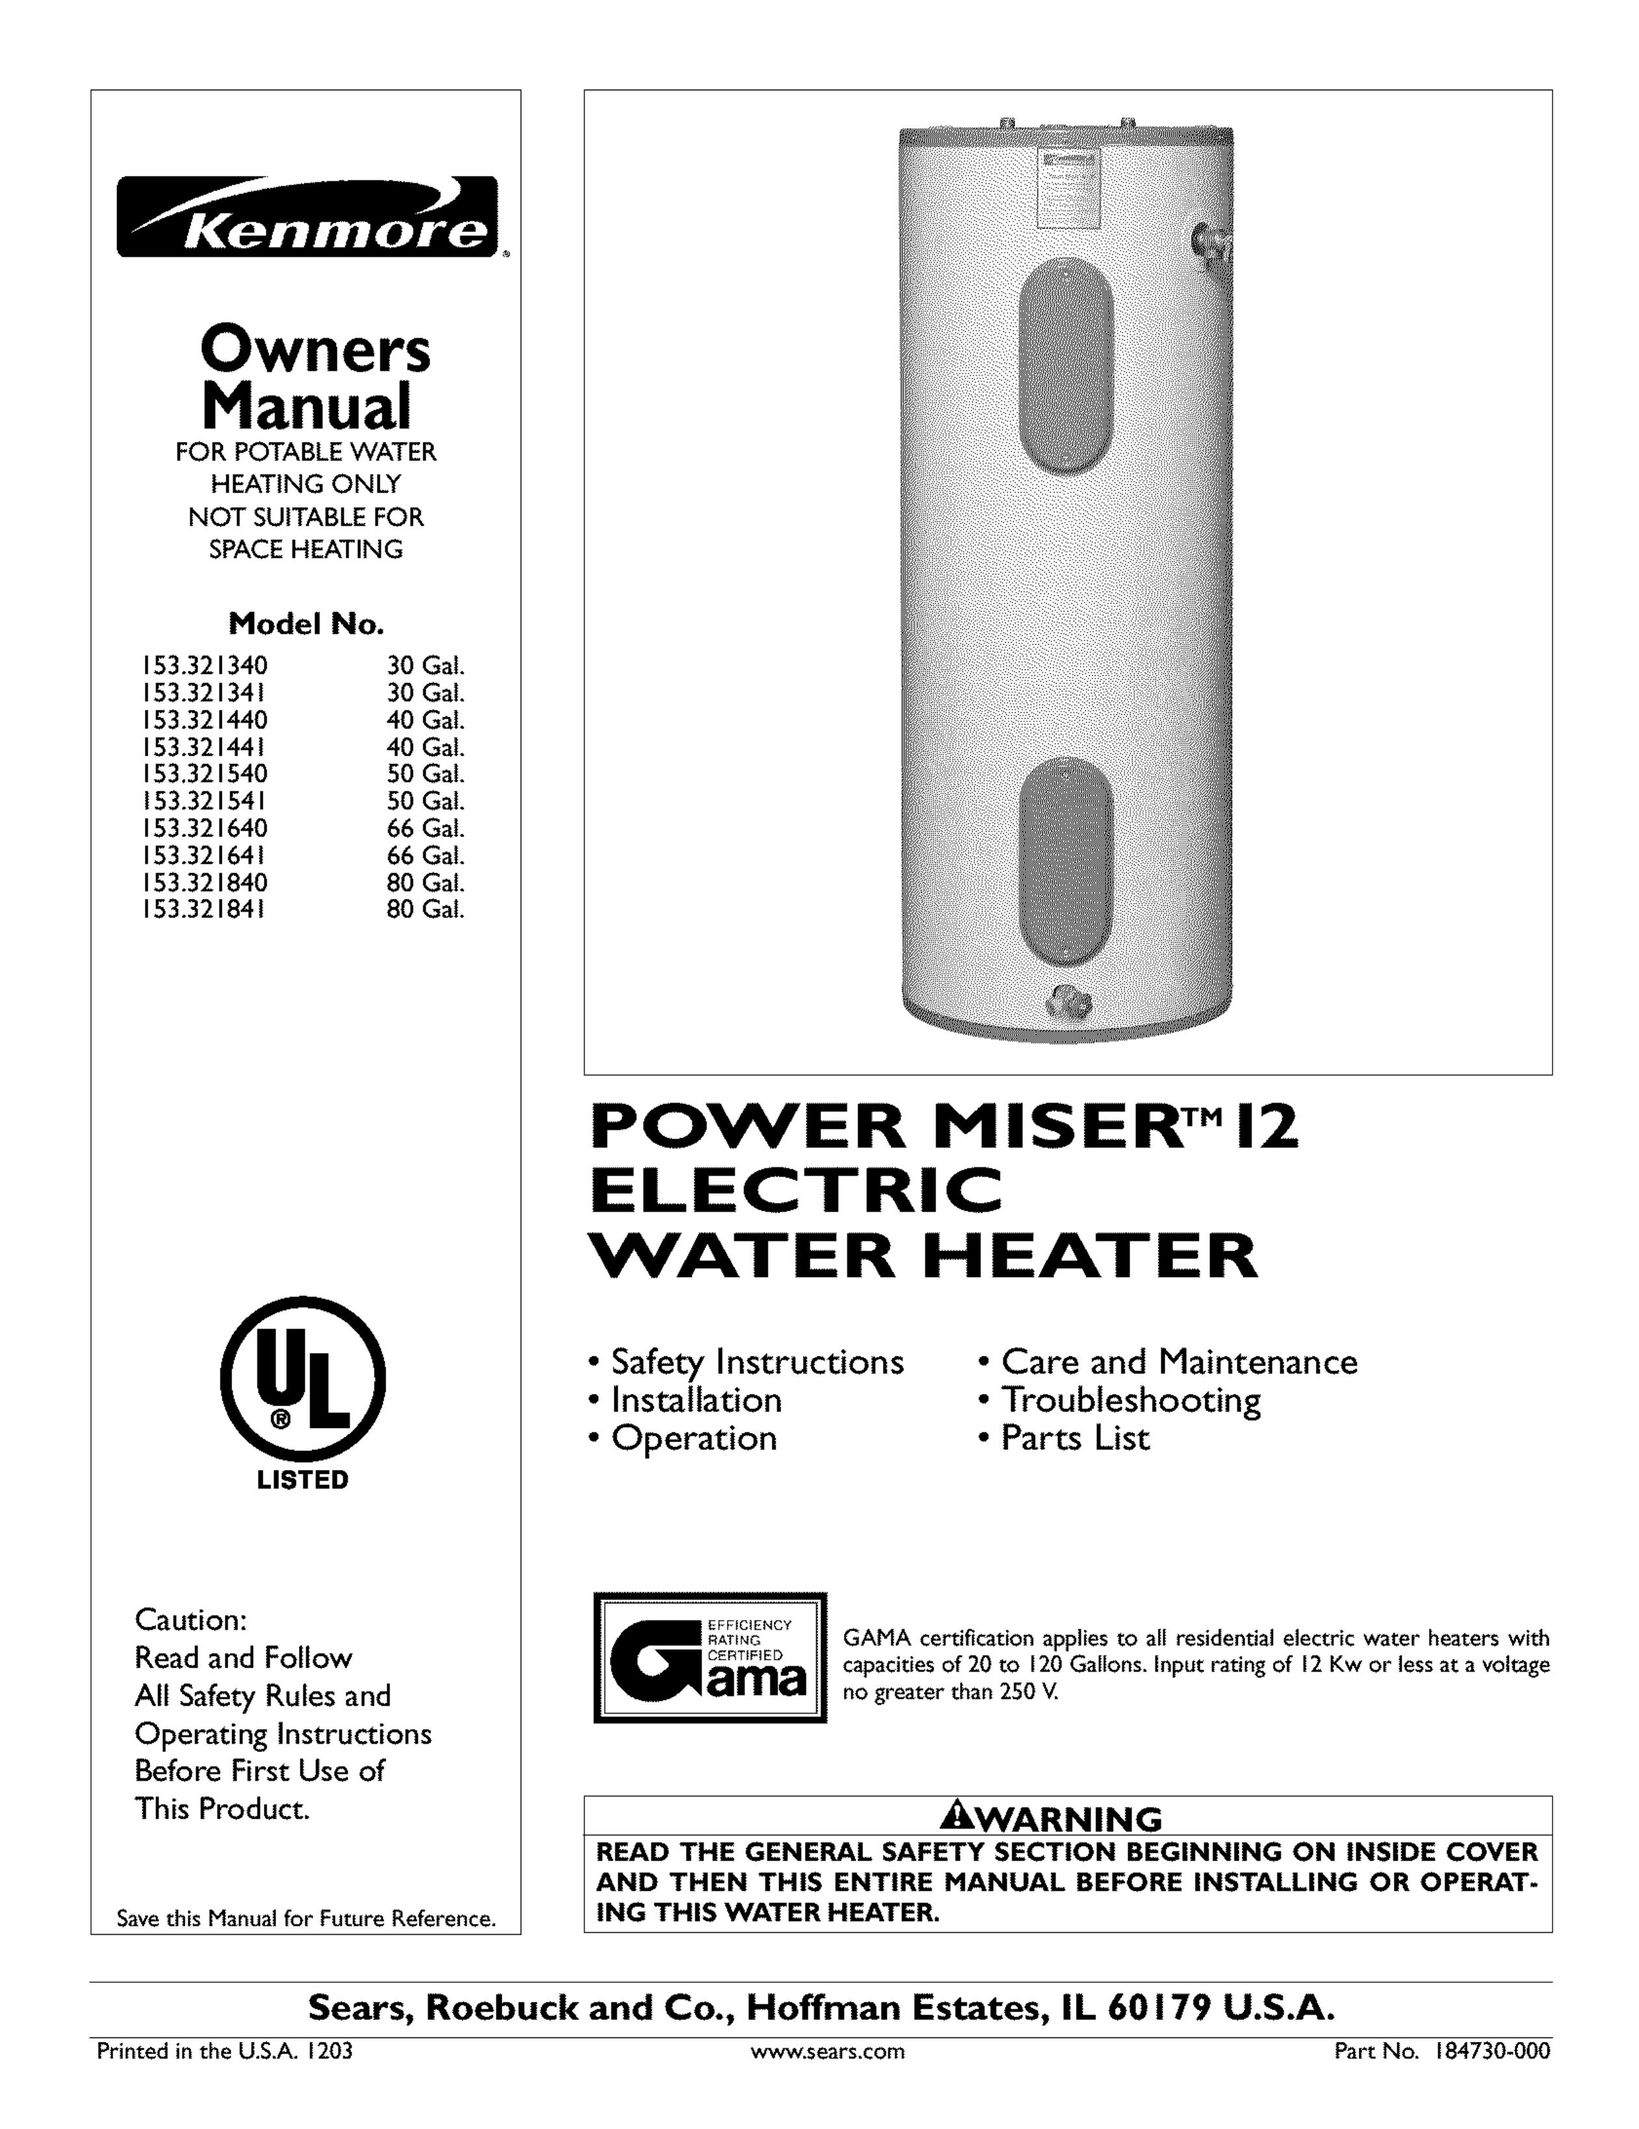 Kenmore 153.321341 Water Heater User Manual